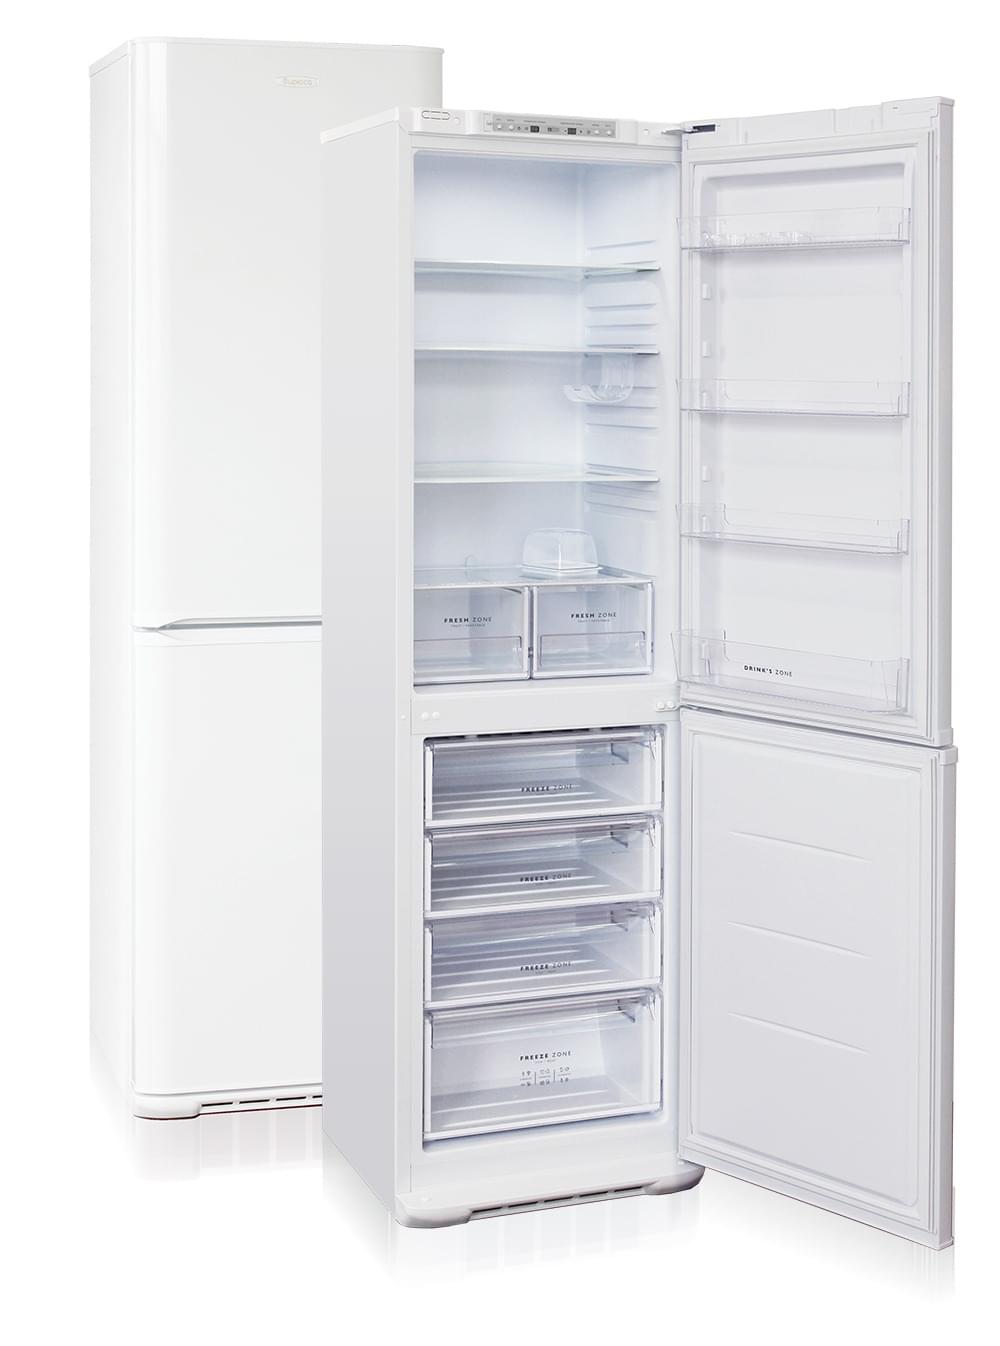 БИРЮСА 629 S  Холодильник - уменьшенная 6